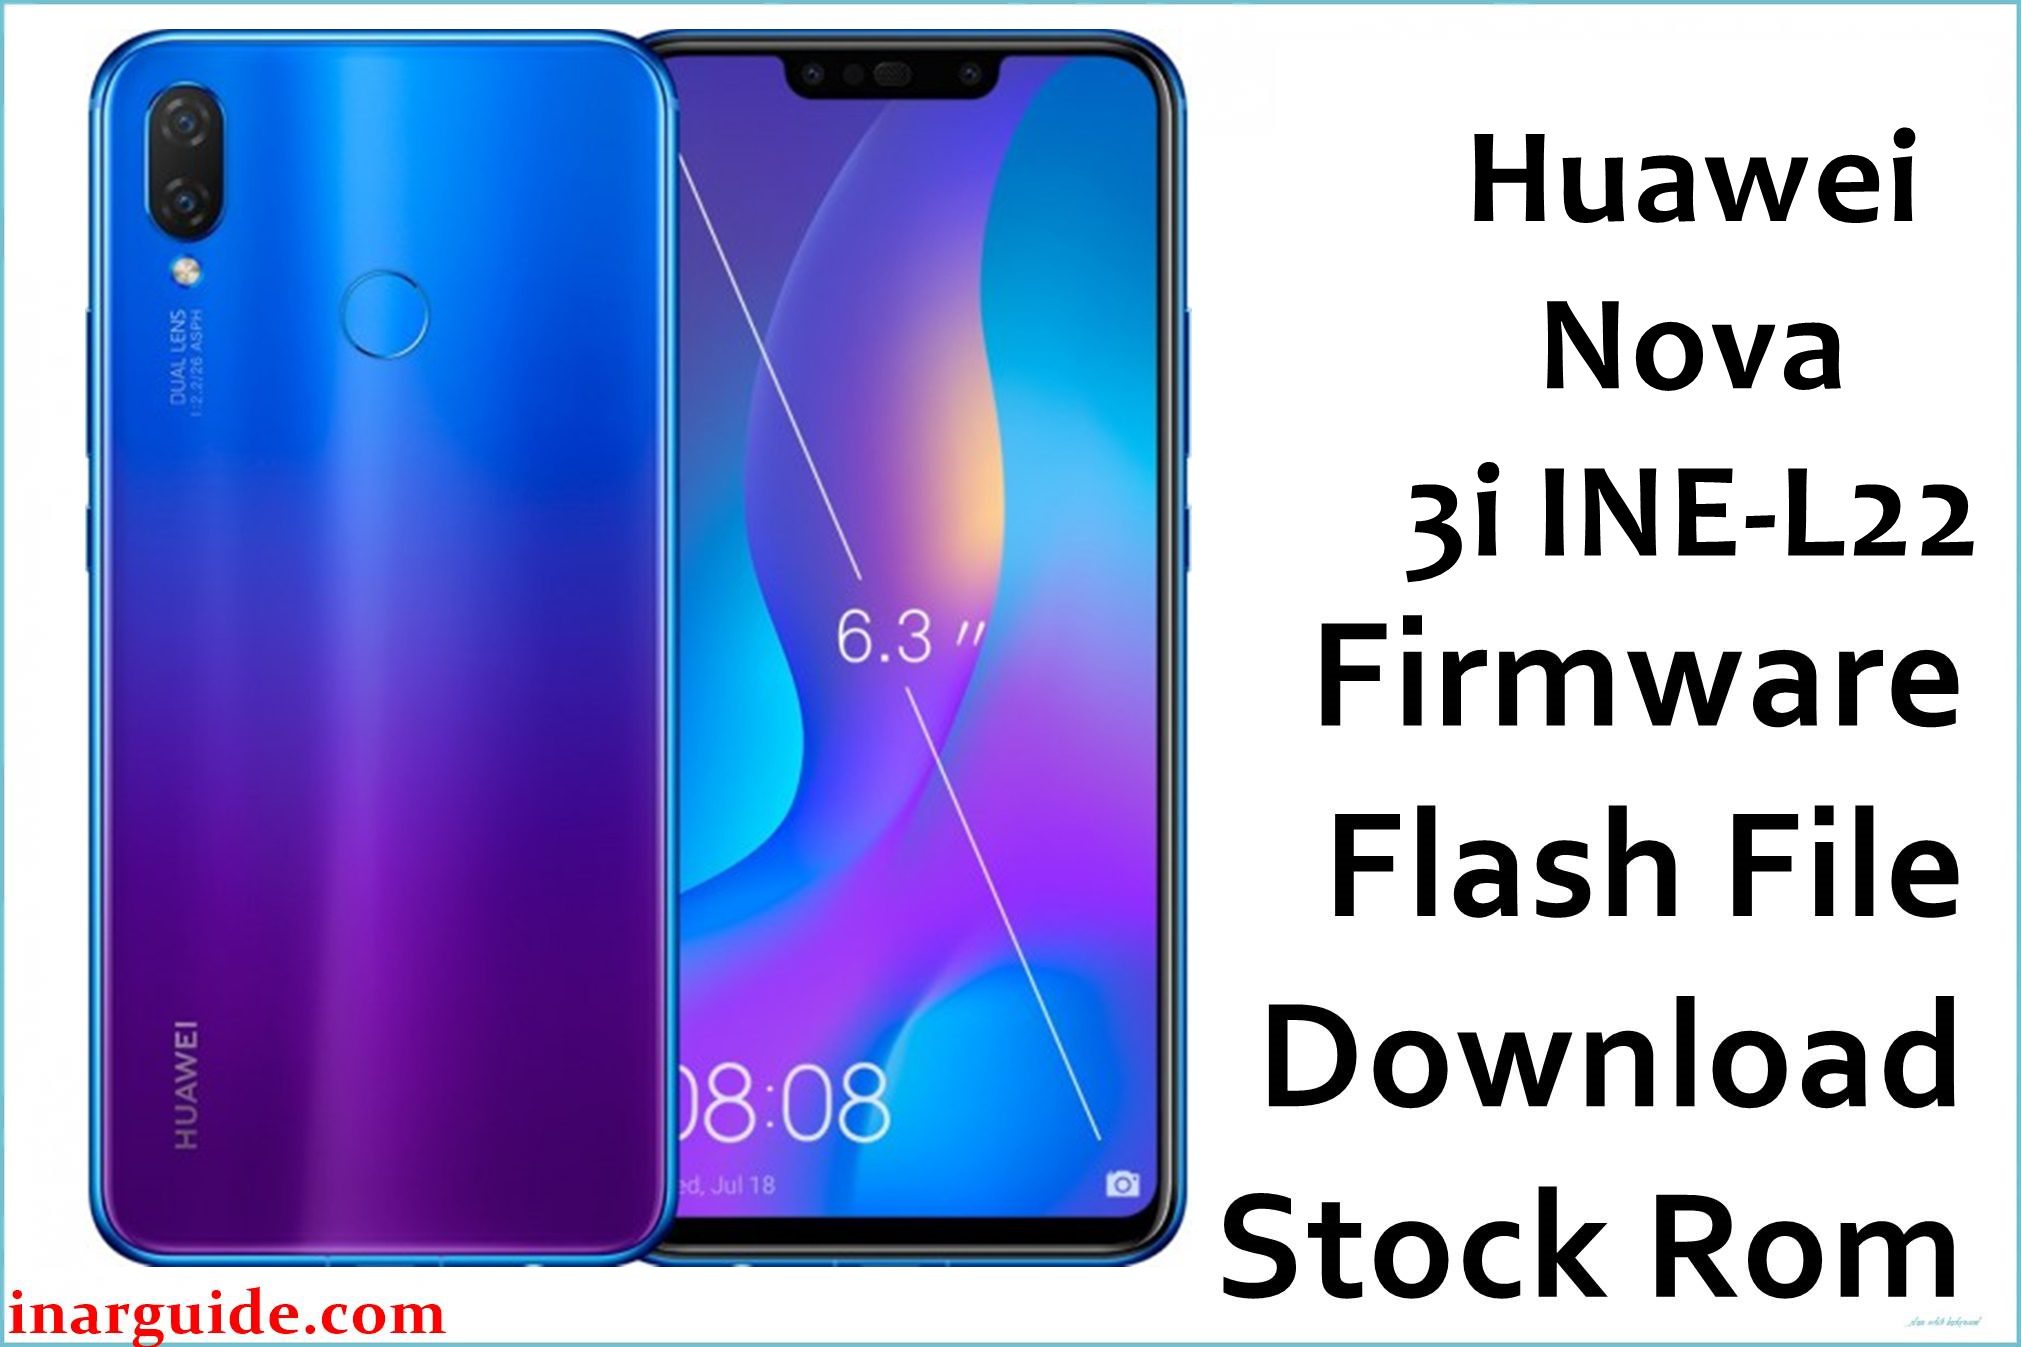 Huawei Nova 3i INE L22